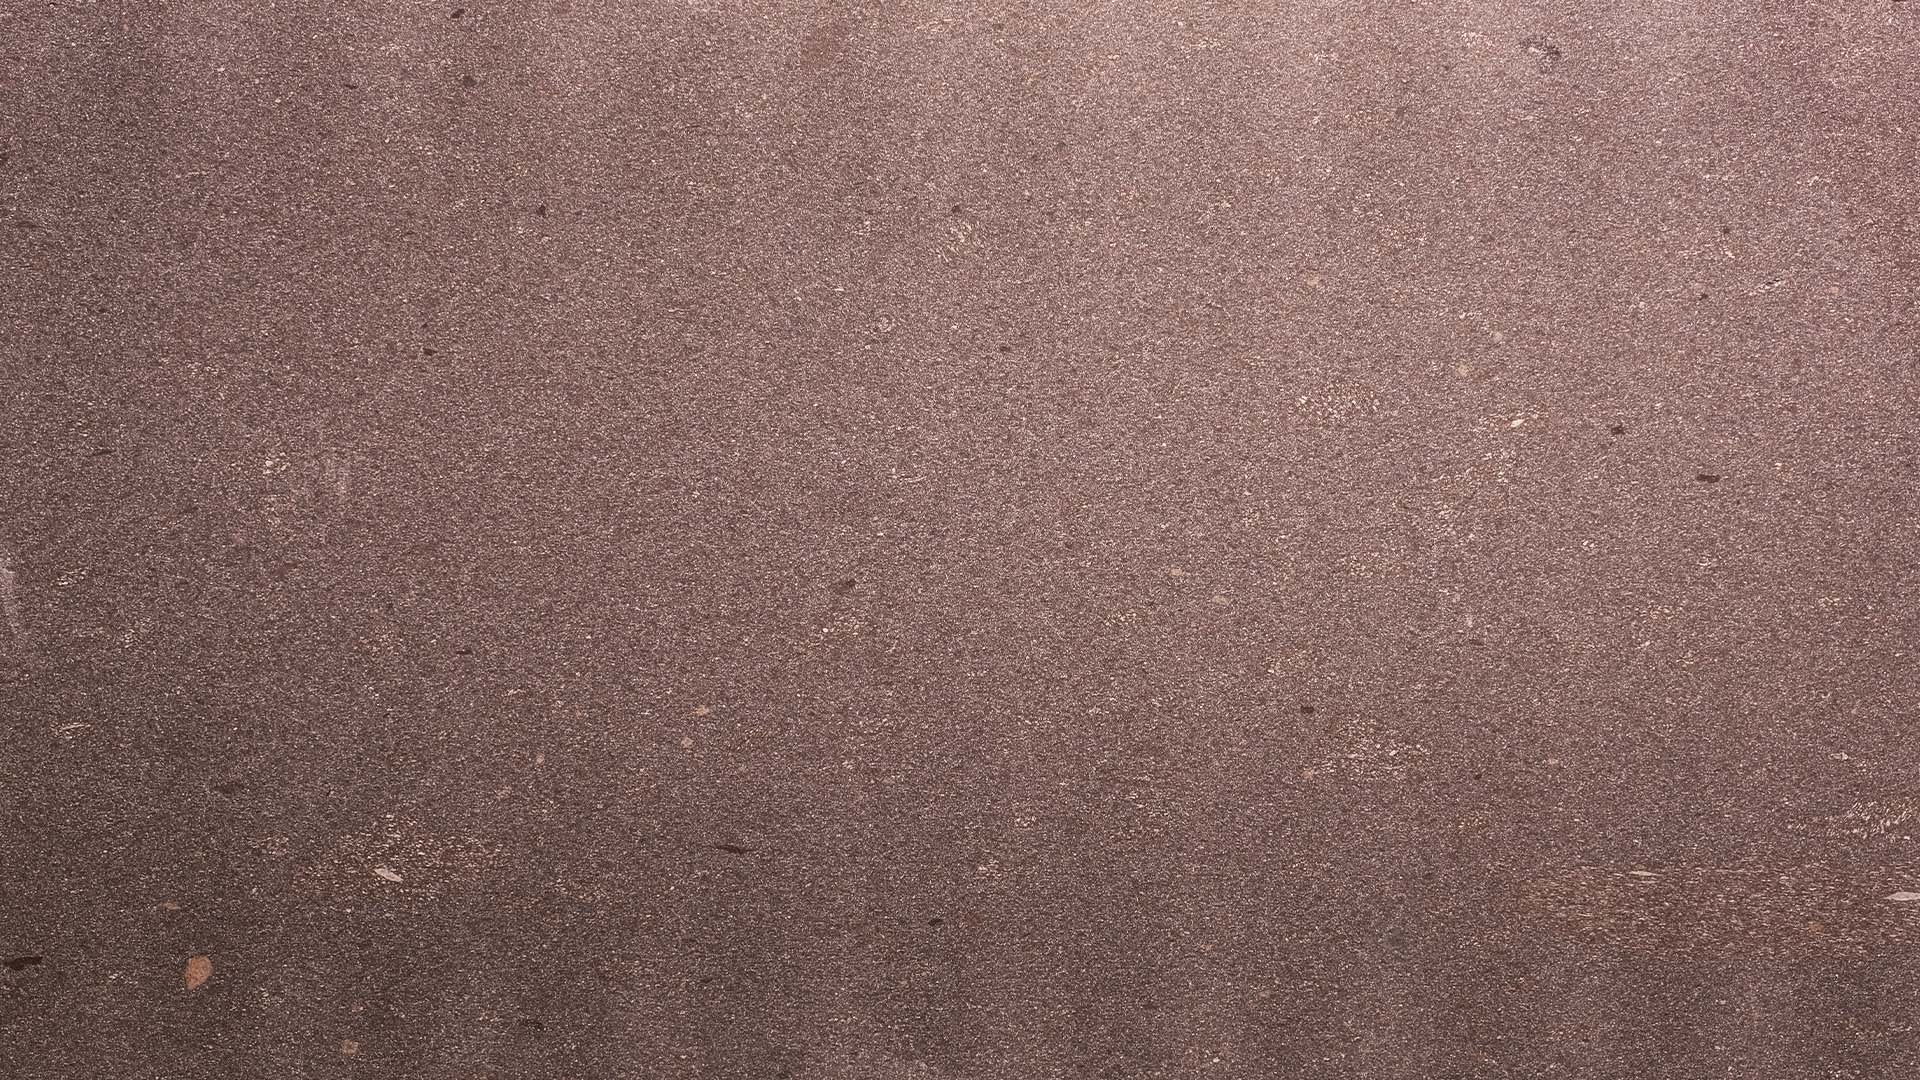 Naturstein Küchenarbeitsplatte in weichem Bordeauxrot mit weiß-rosaner, feiner Musterung im matten leather look in der Farbe Porphyr Valcamonica.